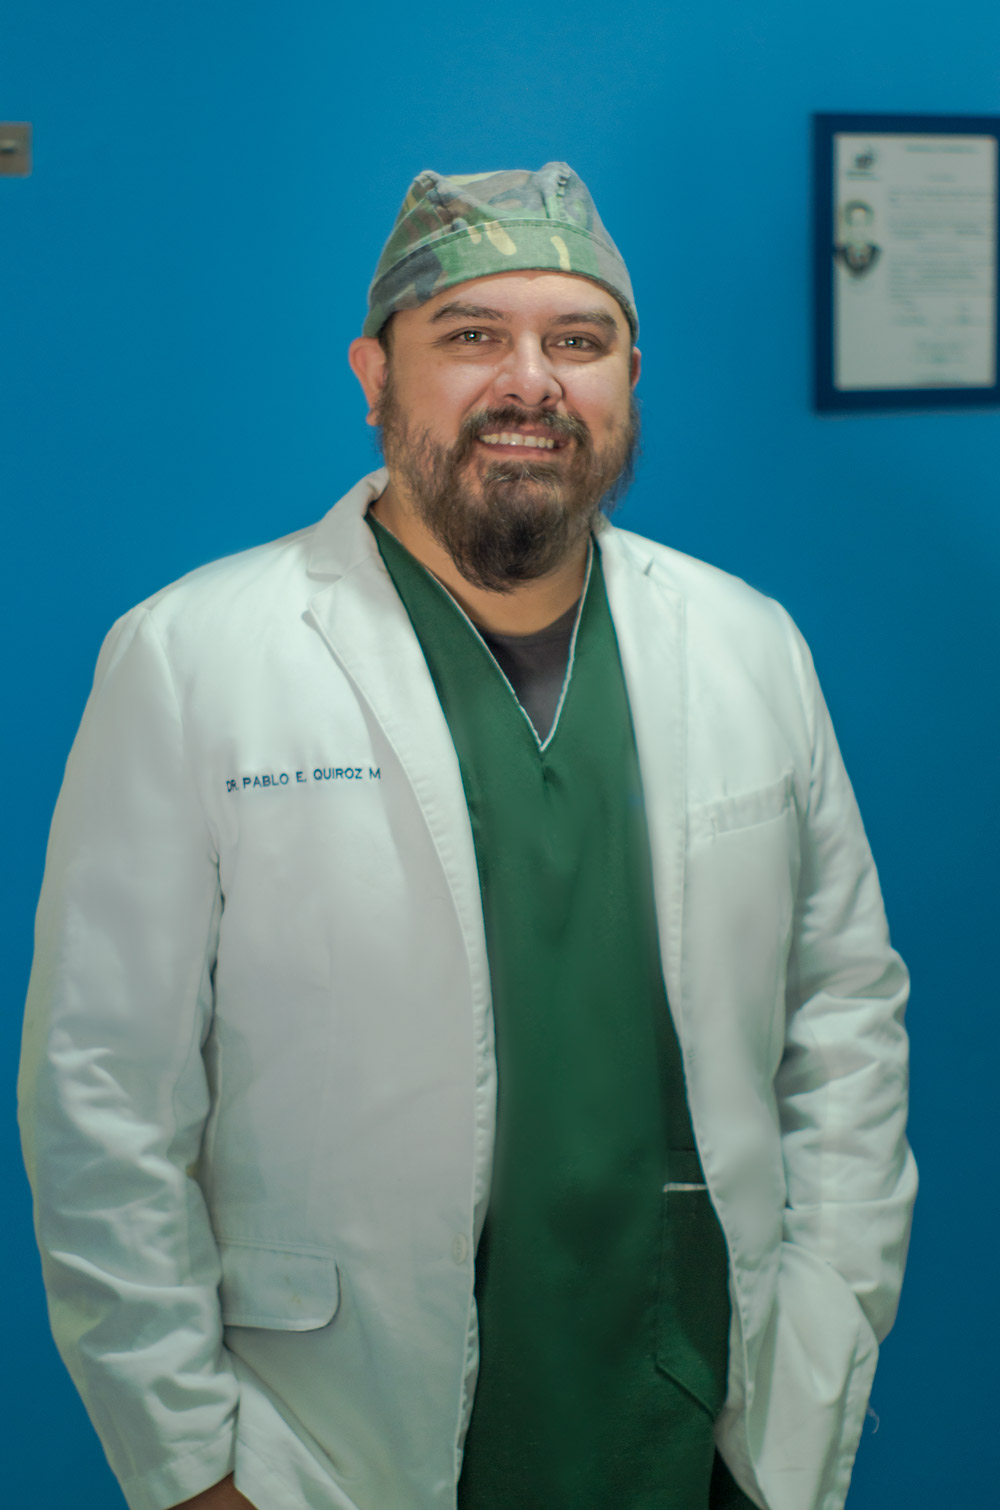 Dr Pablo Quiroz